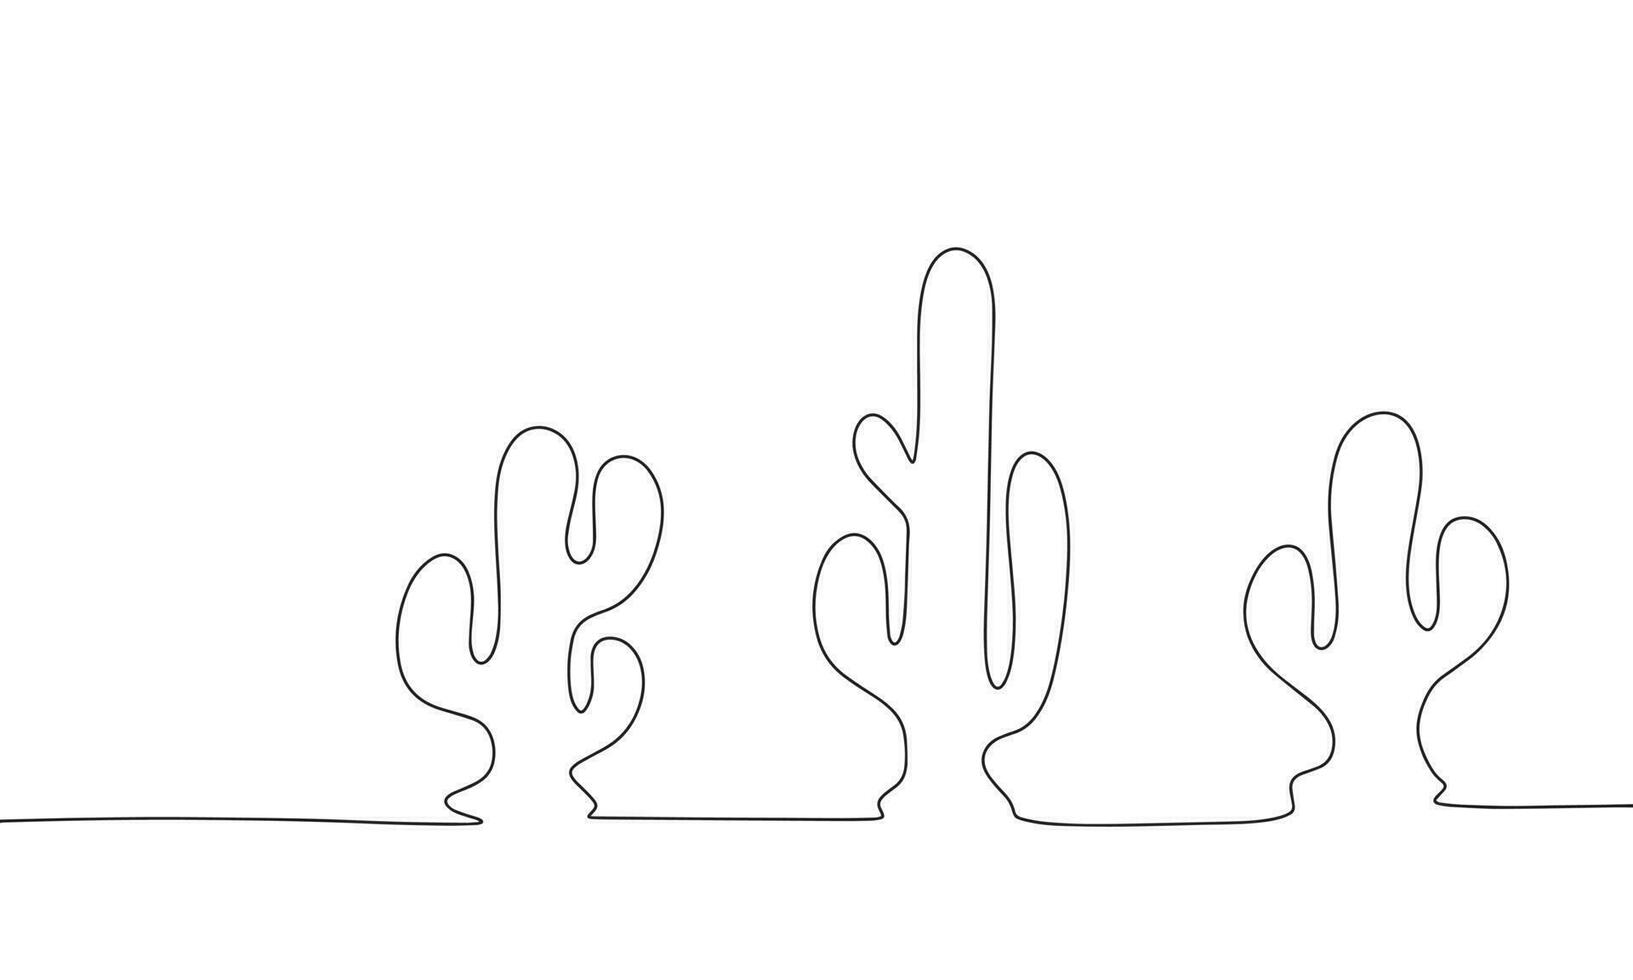 silhouette cactus nel riga. uno linea continuo astratto concezione di natura nel deserto. linea arte, schema, silhouette, vettore illustrazione.